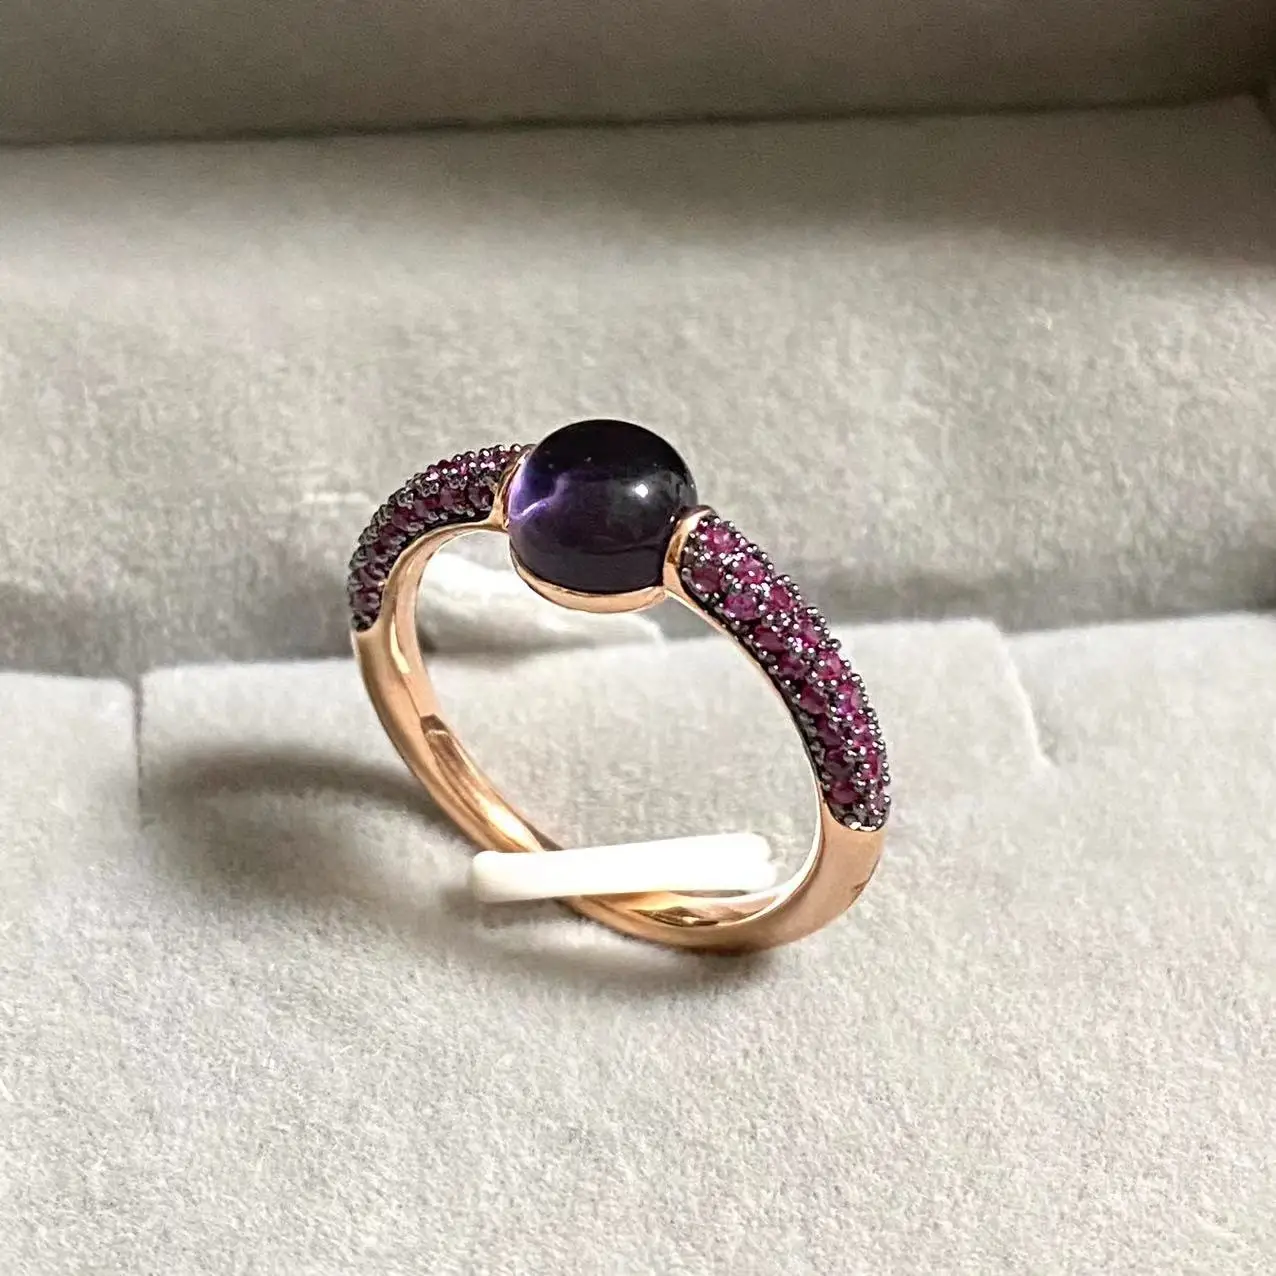 Хрустальное кольцо с фиолетовым цирконом, 6 мм Круглое кольцо в стиле конфет, инкрустация Фиолетовым цирконом, кольцо с кристаллом для женщин, Конфетное кольцо, подарок на День рождения